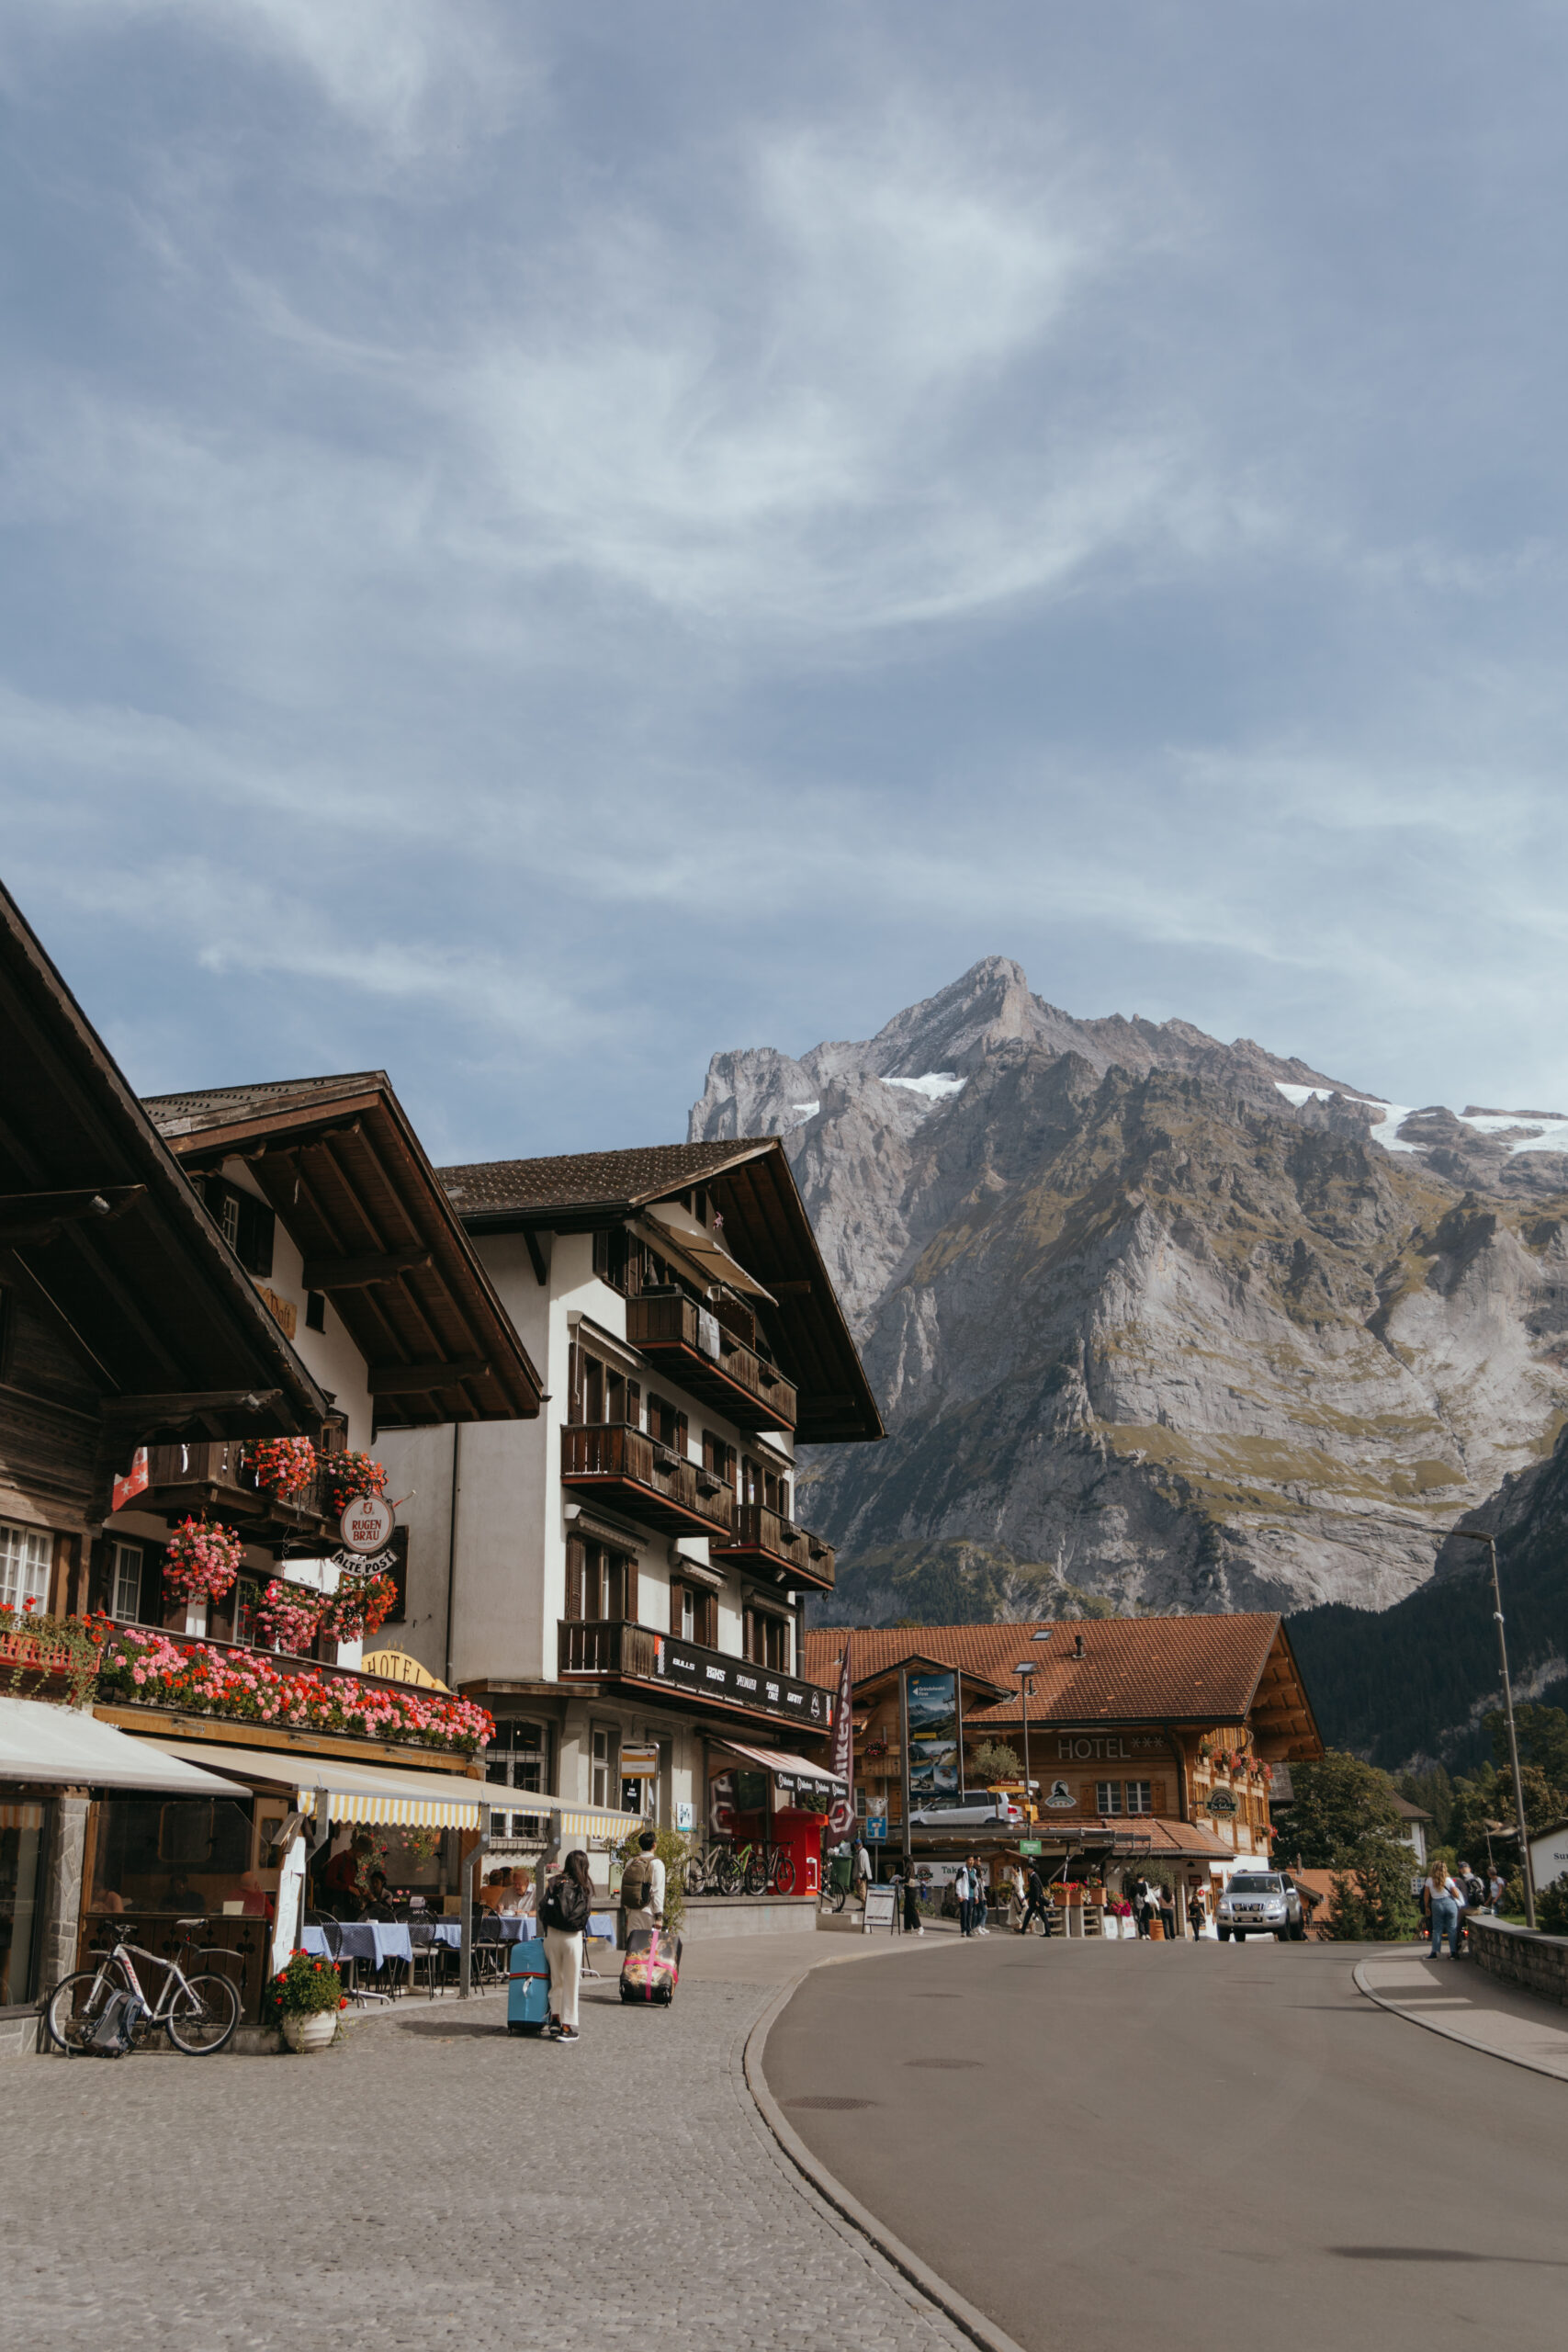 Grindelwald village in Switzerland